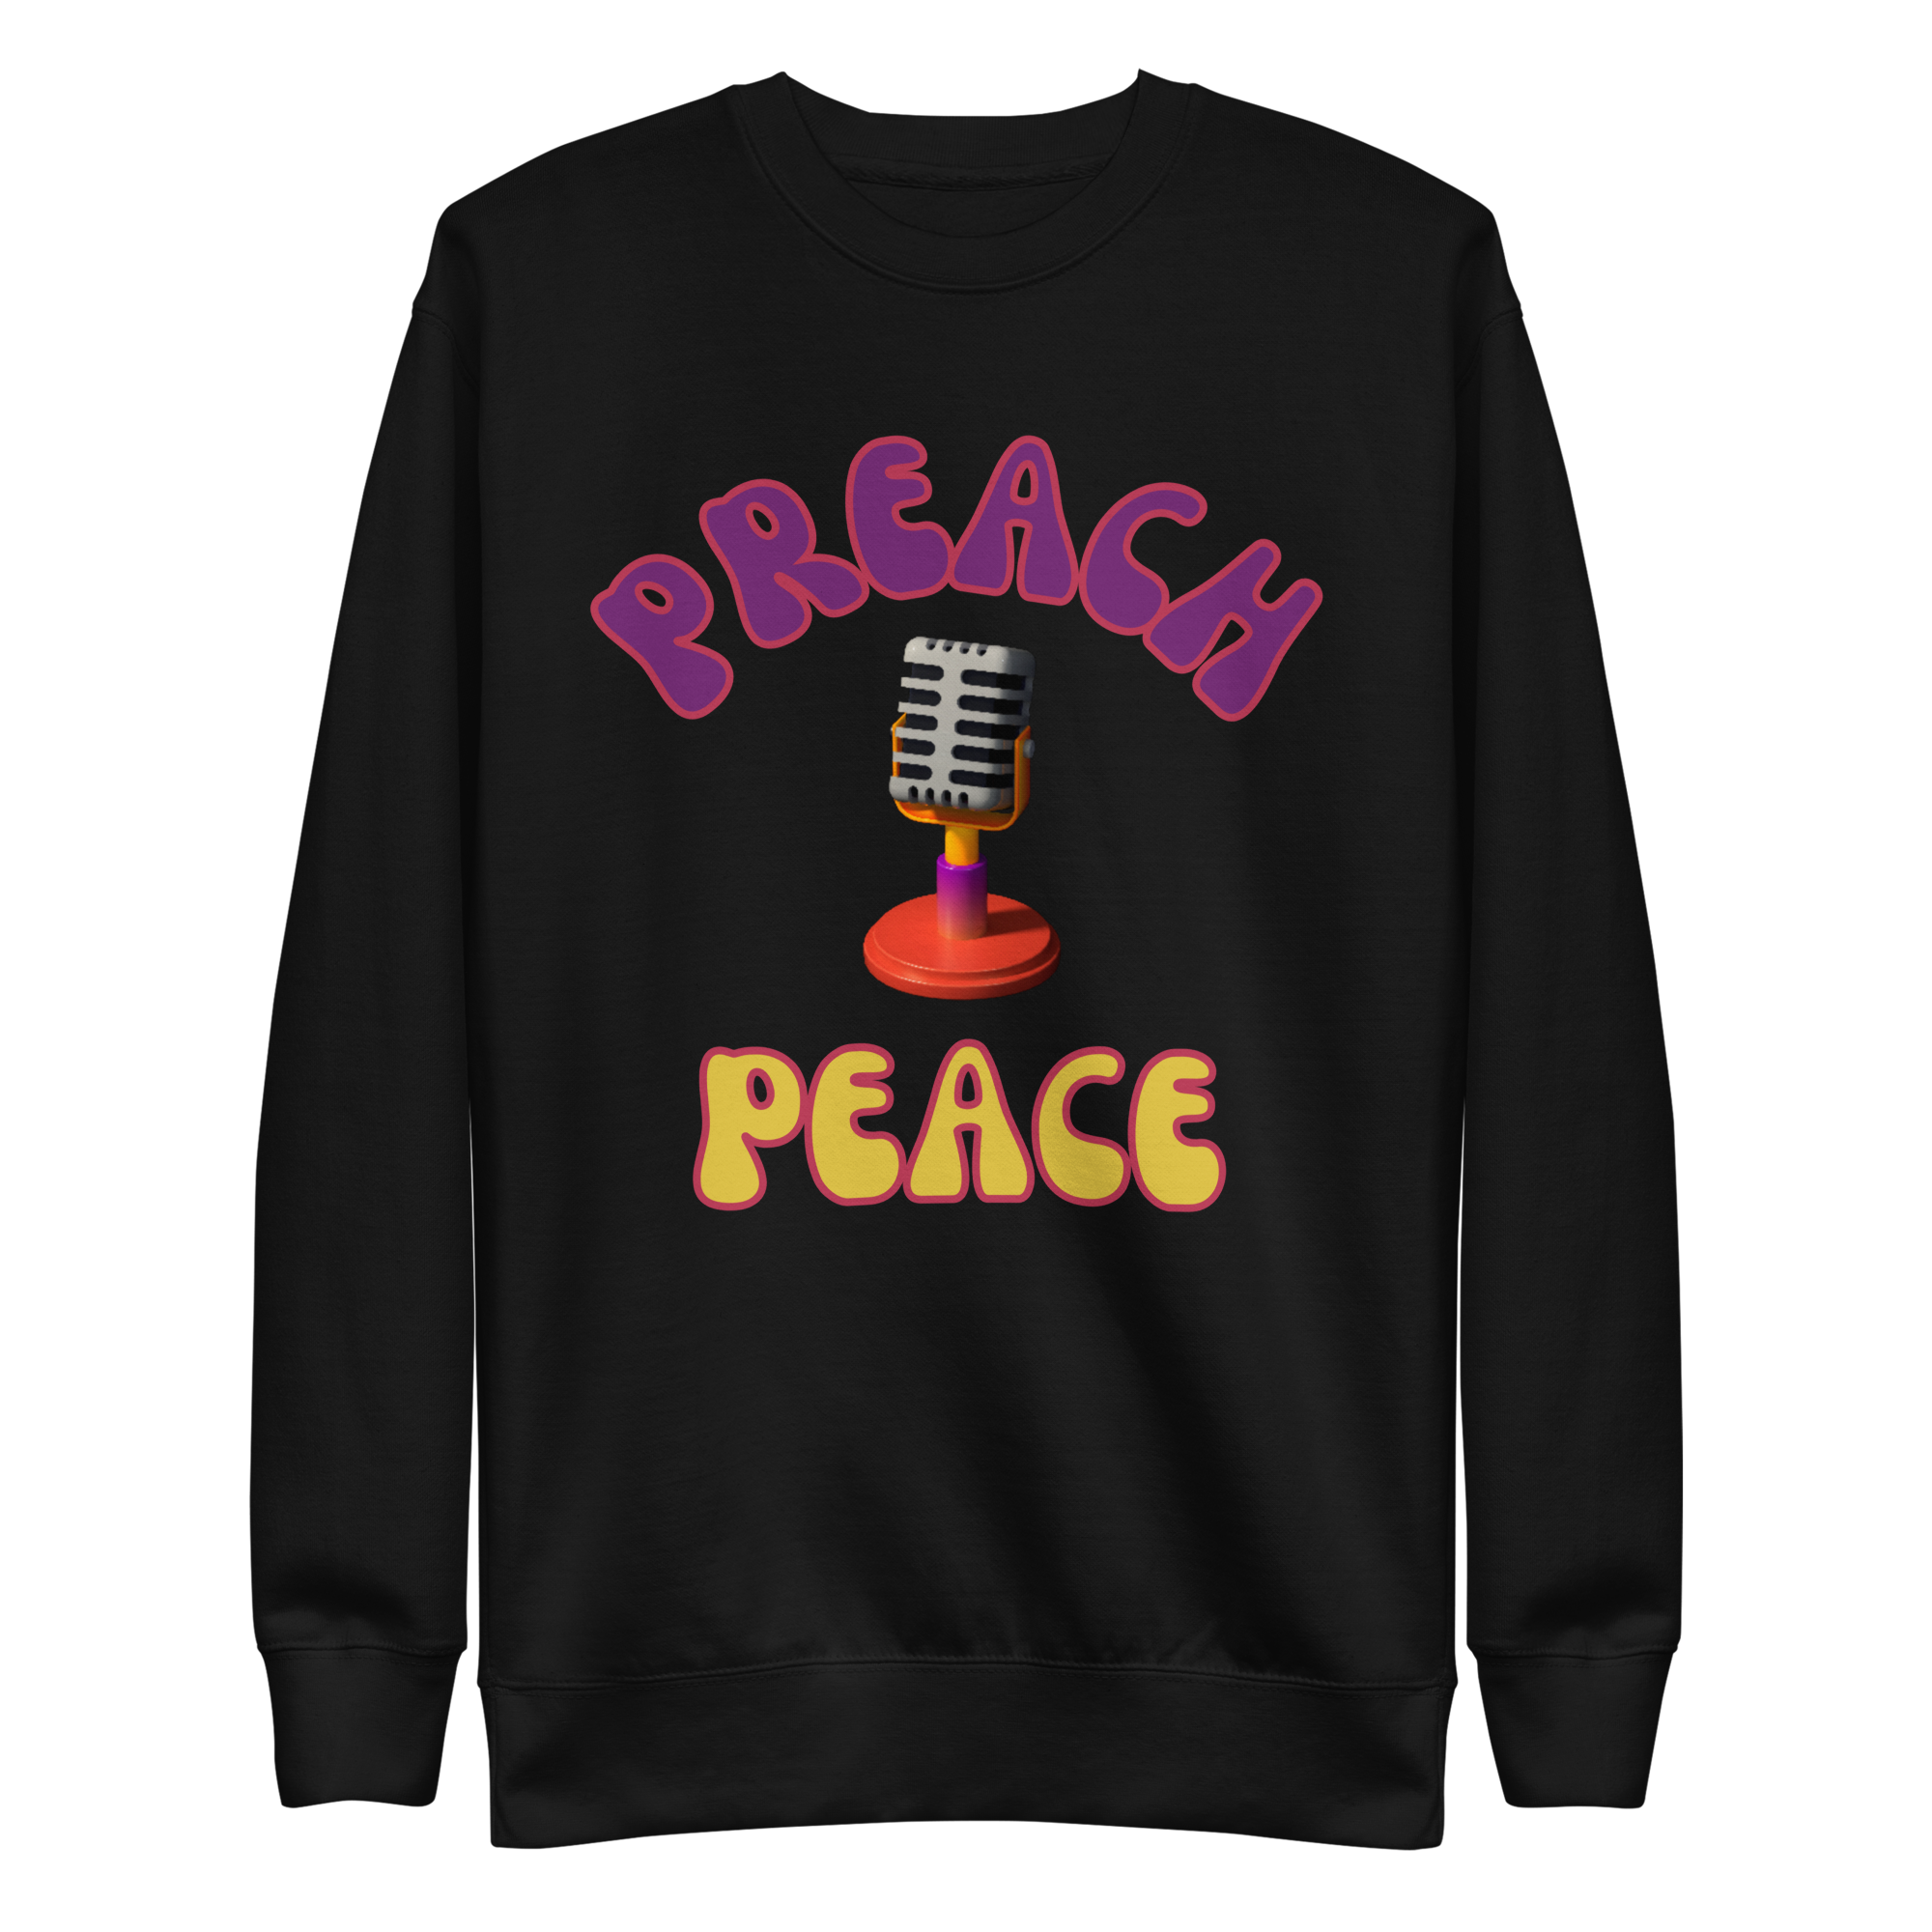 Preach Peace Unisex Premium Sweatshirt